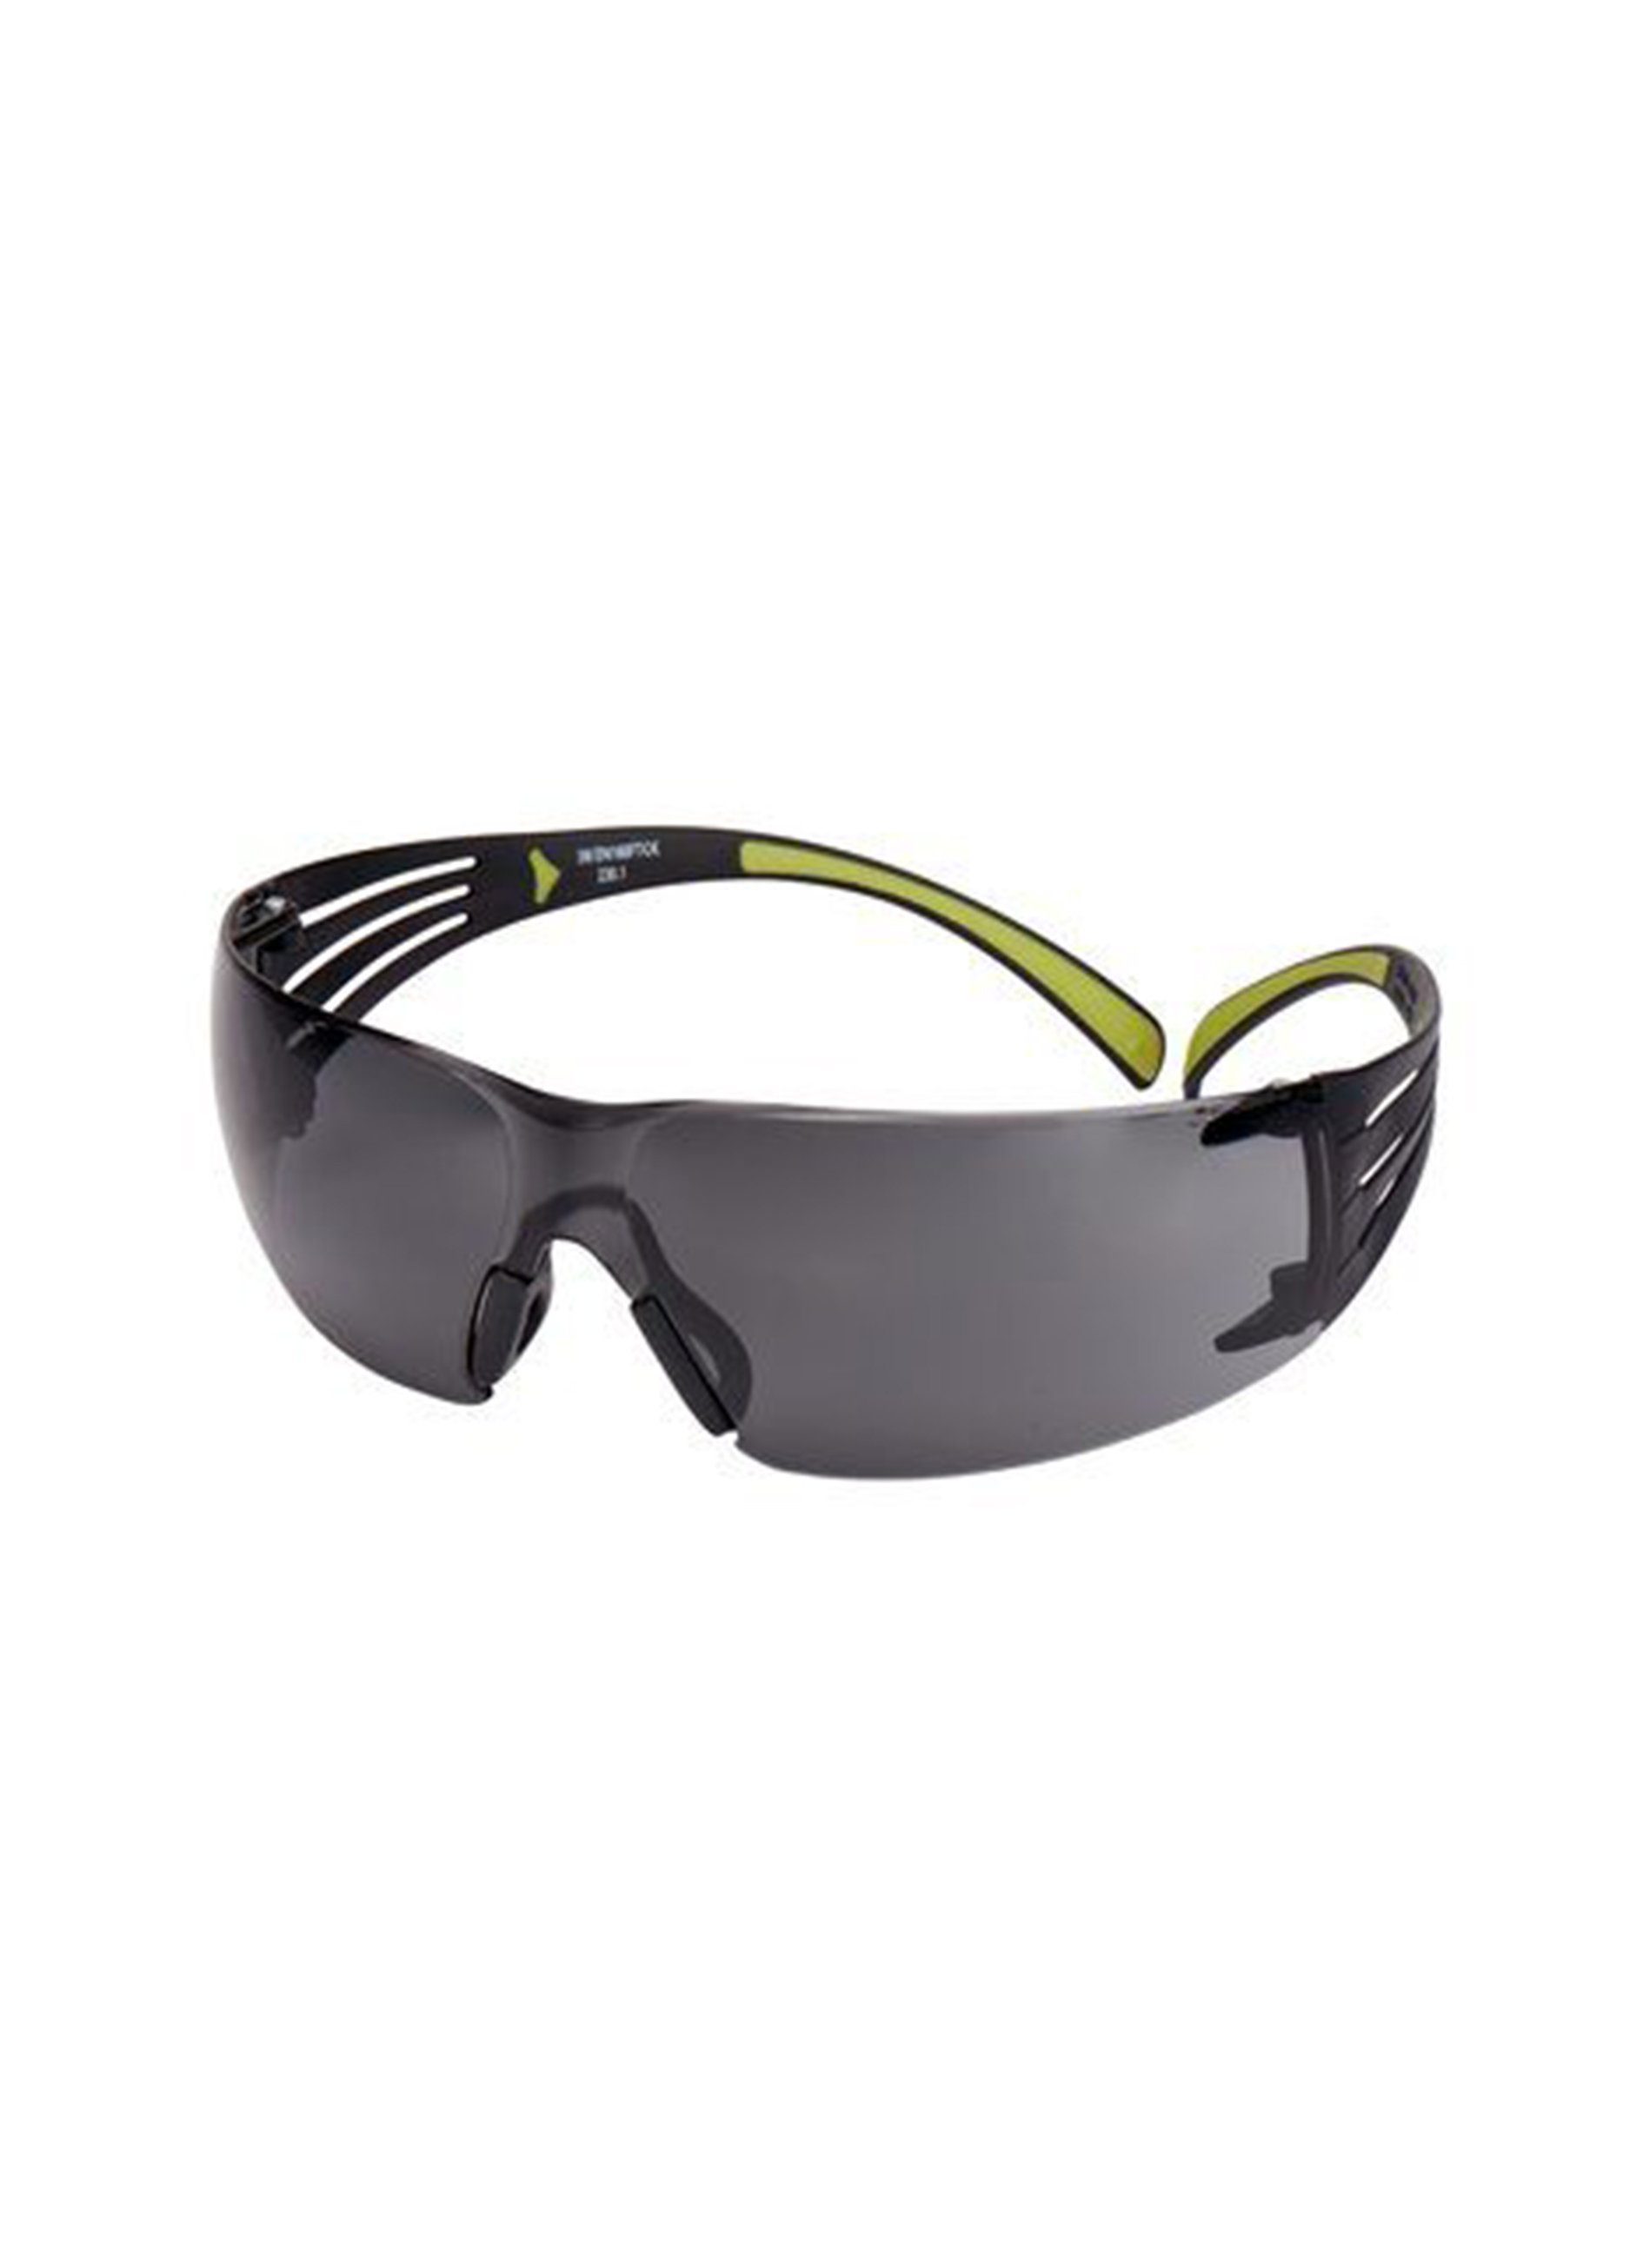 3M graue Schutzbrille, schwarz/grüne ein gutes Brille leicht hervorragenden Antikratz-/Antibeschlag-Beschichtung, Schutz 3M™ bietet sehr sowie SecureFit™ 400 (19g) Scheibe, Bügel, Sichtfeld,